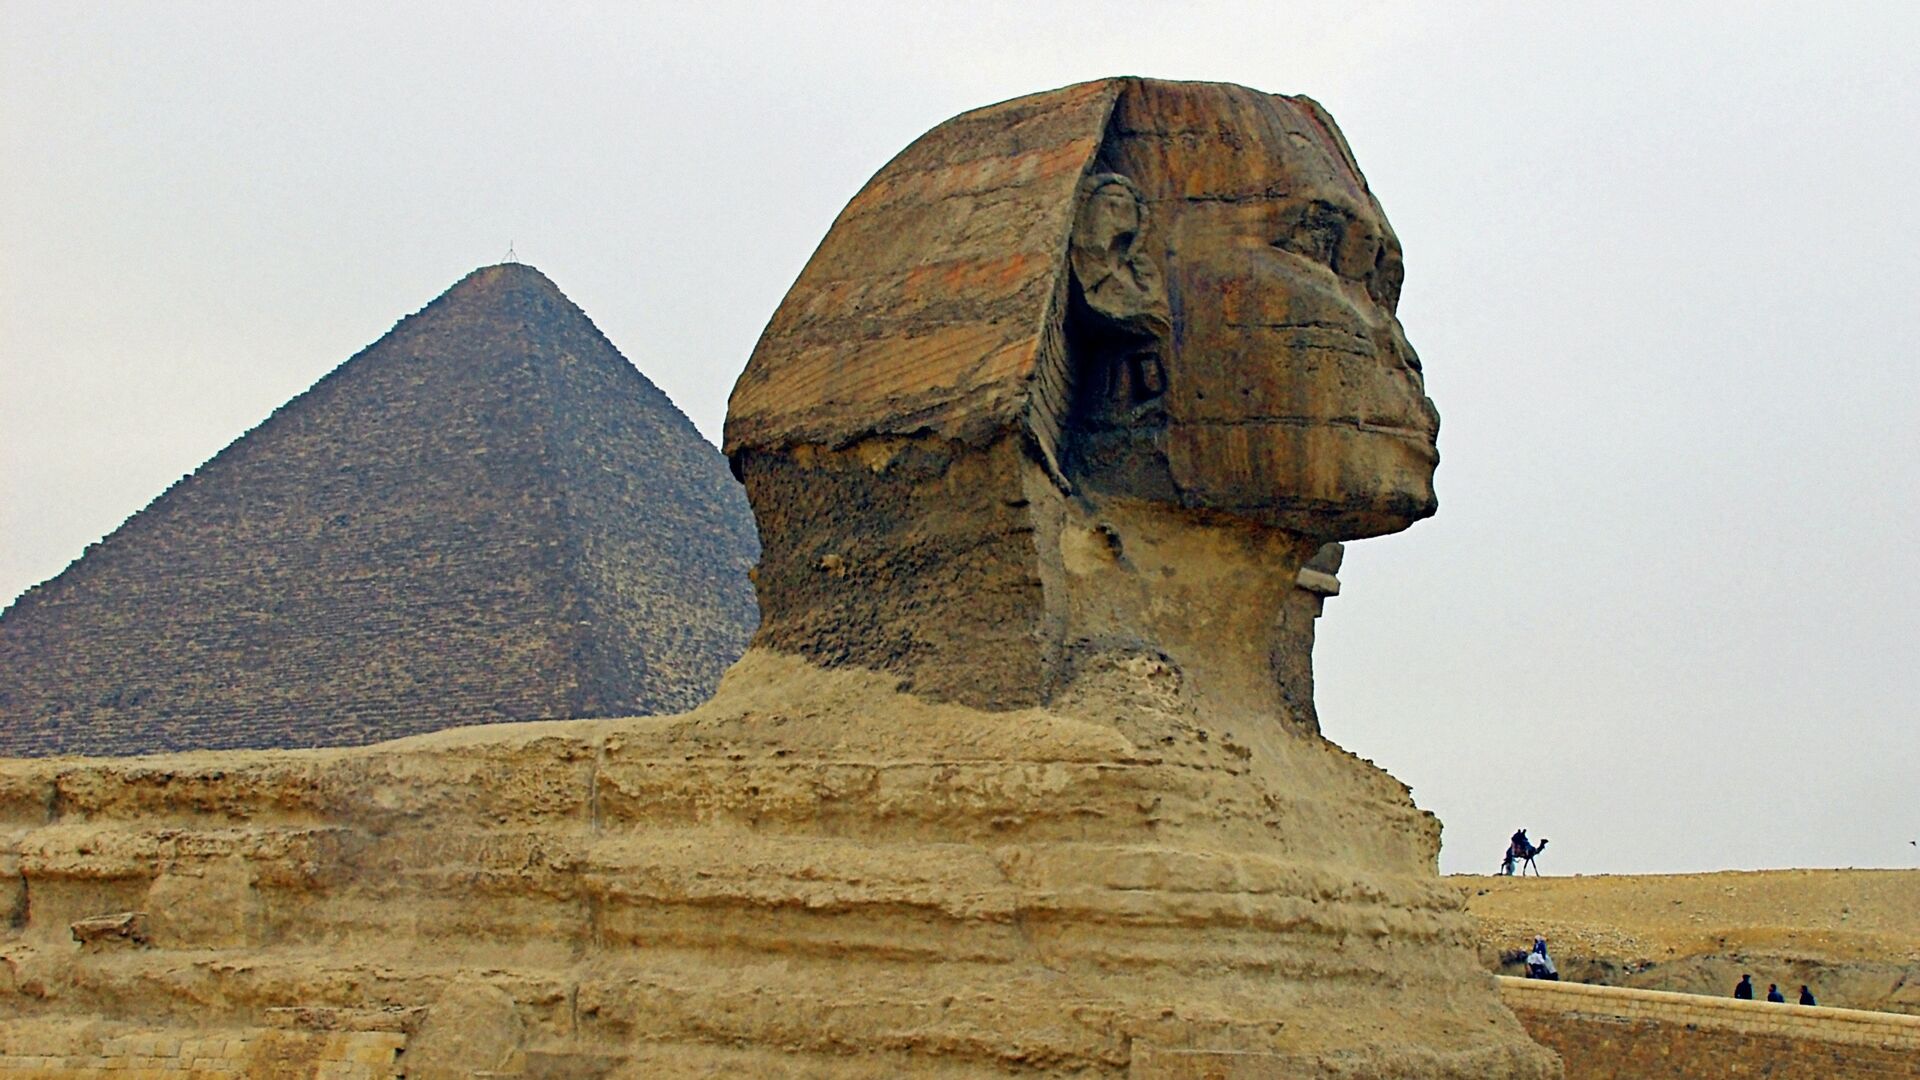 Сфинкс и пирамида Хеопса в Долине Гиза в Египте - РИА Новости, 1920, 19.10.2020